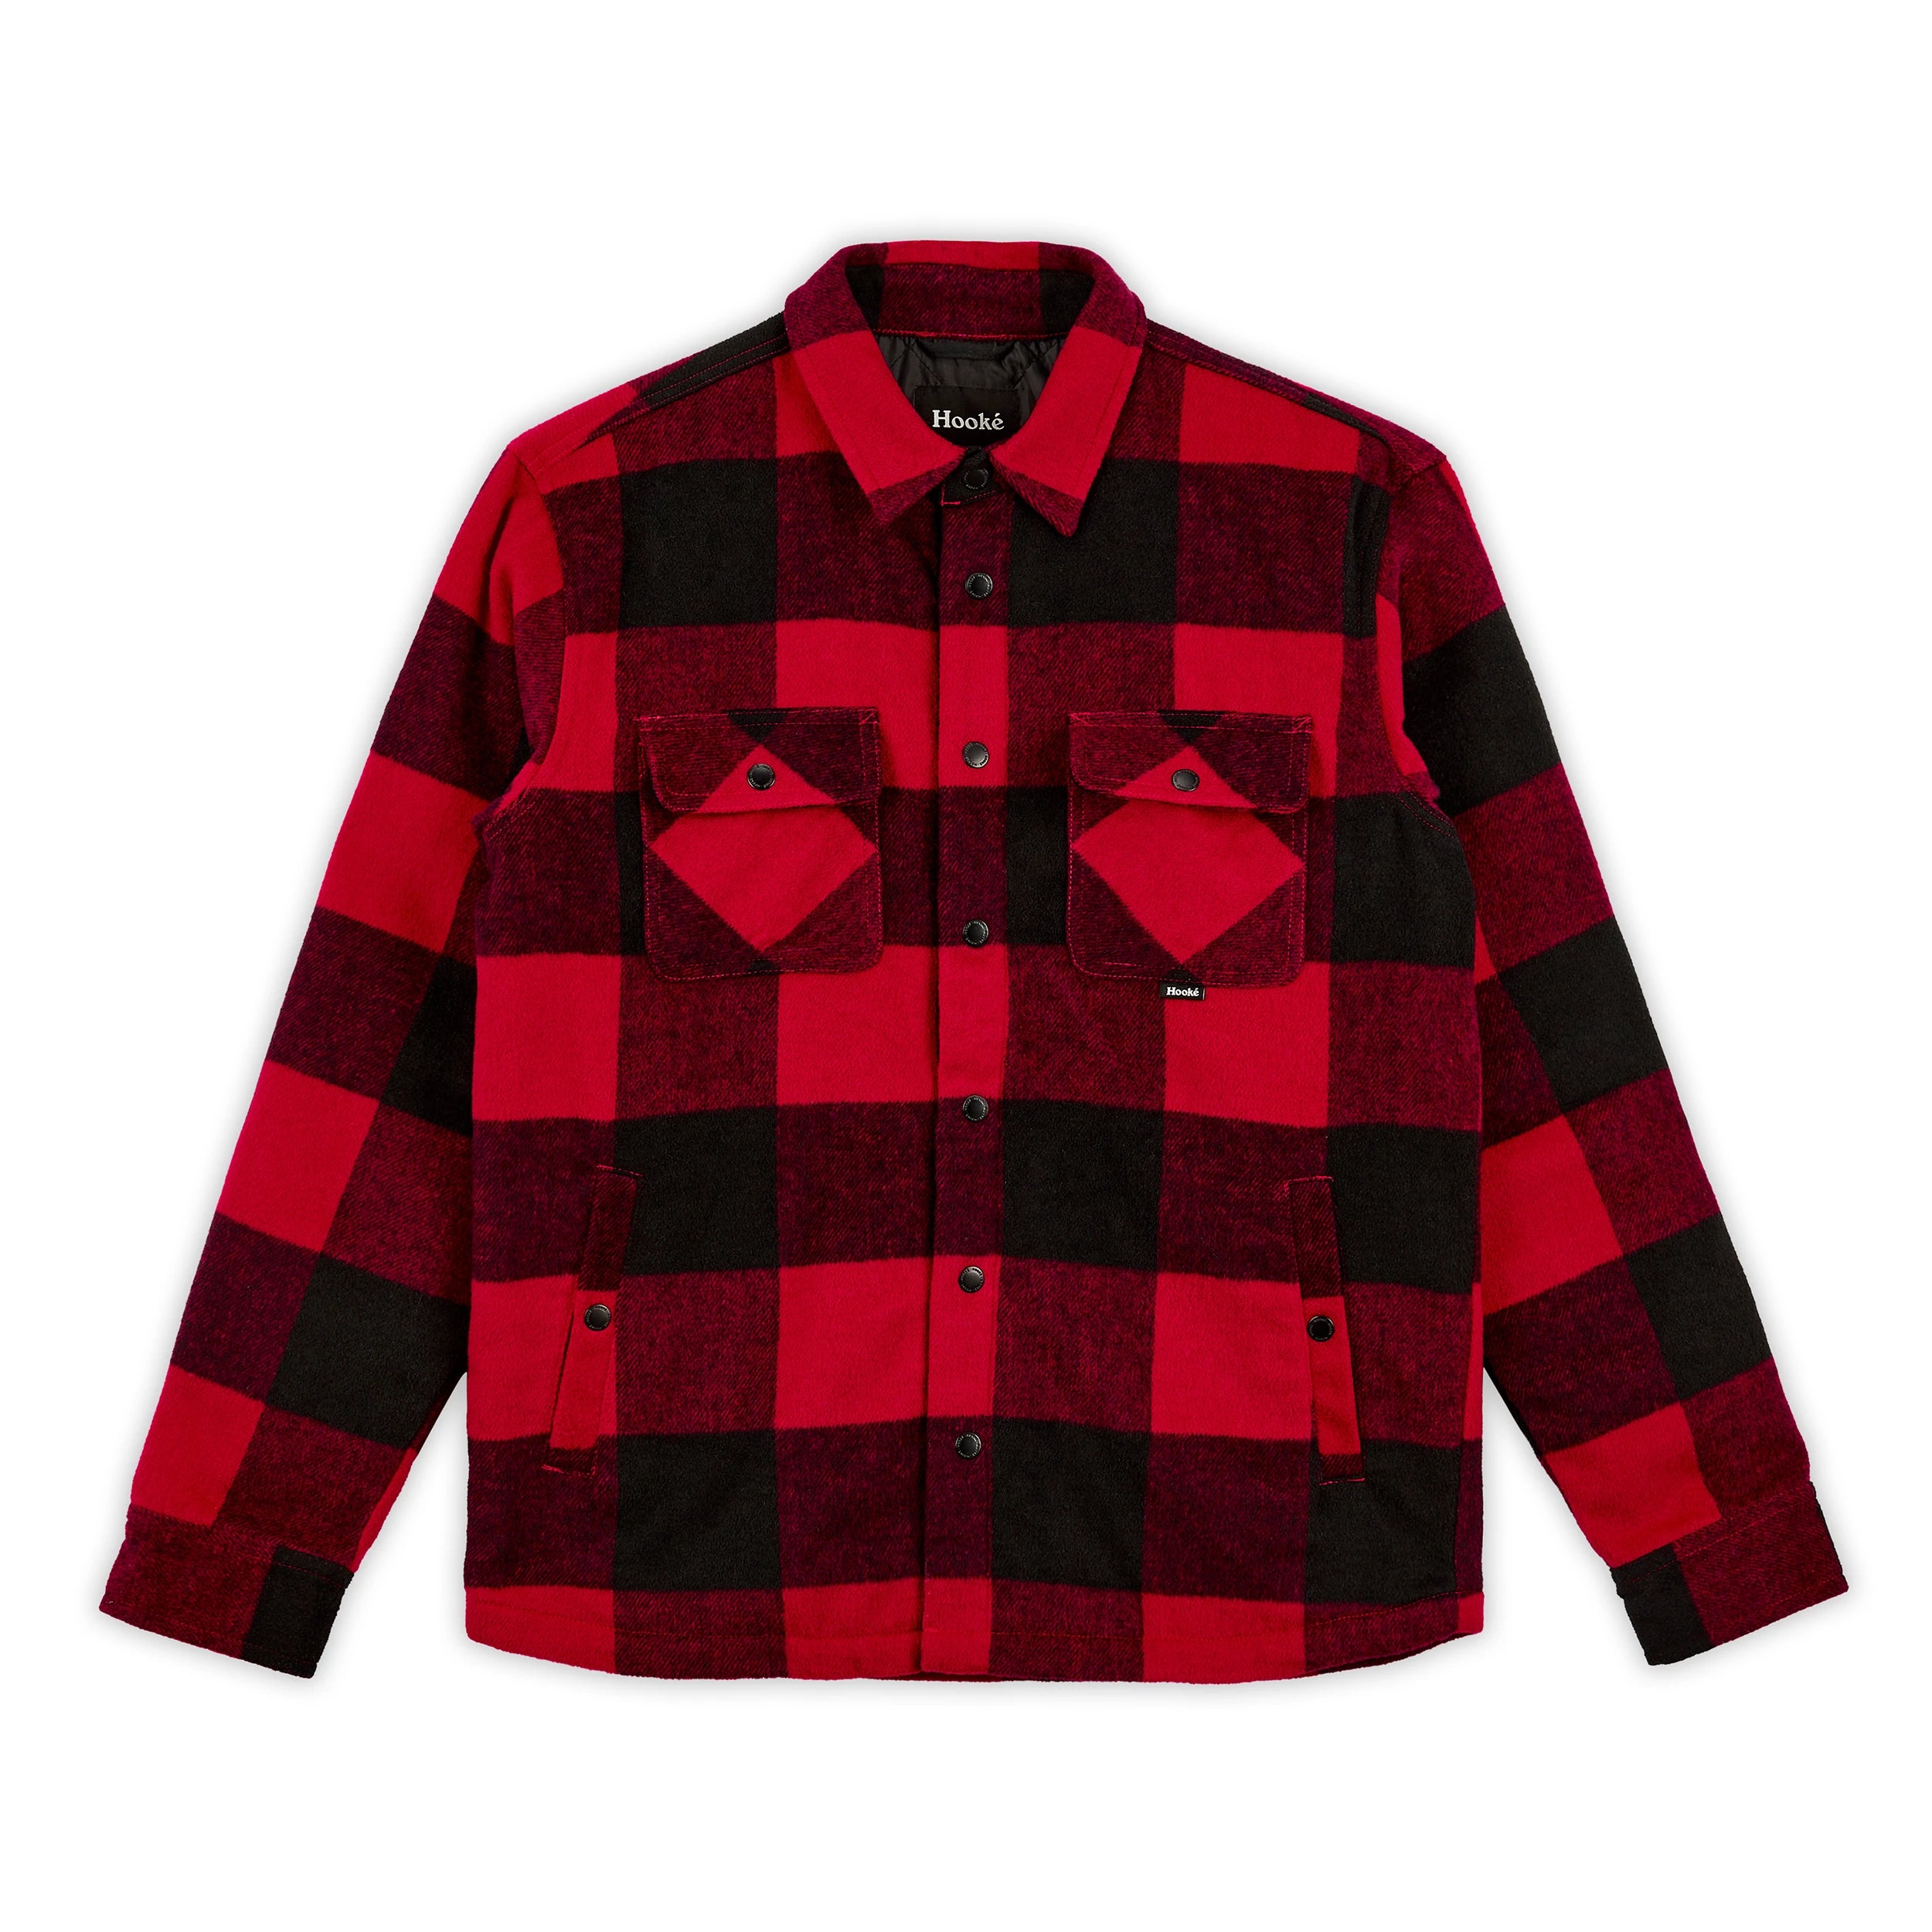 Hooké Original Canadian Insulated Shirt - Men's M Red - Black